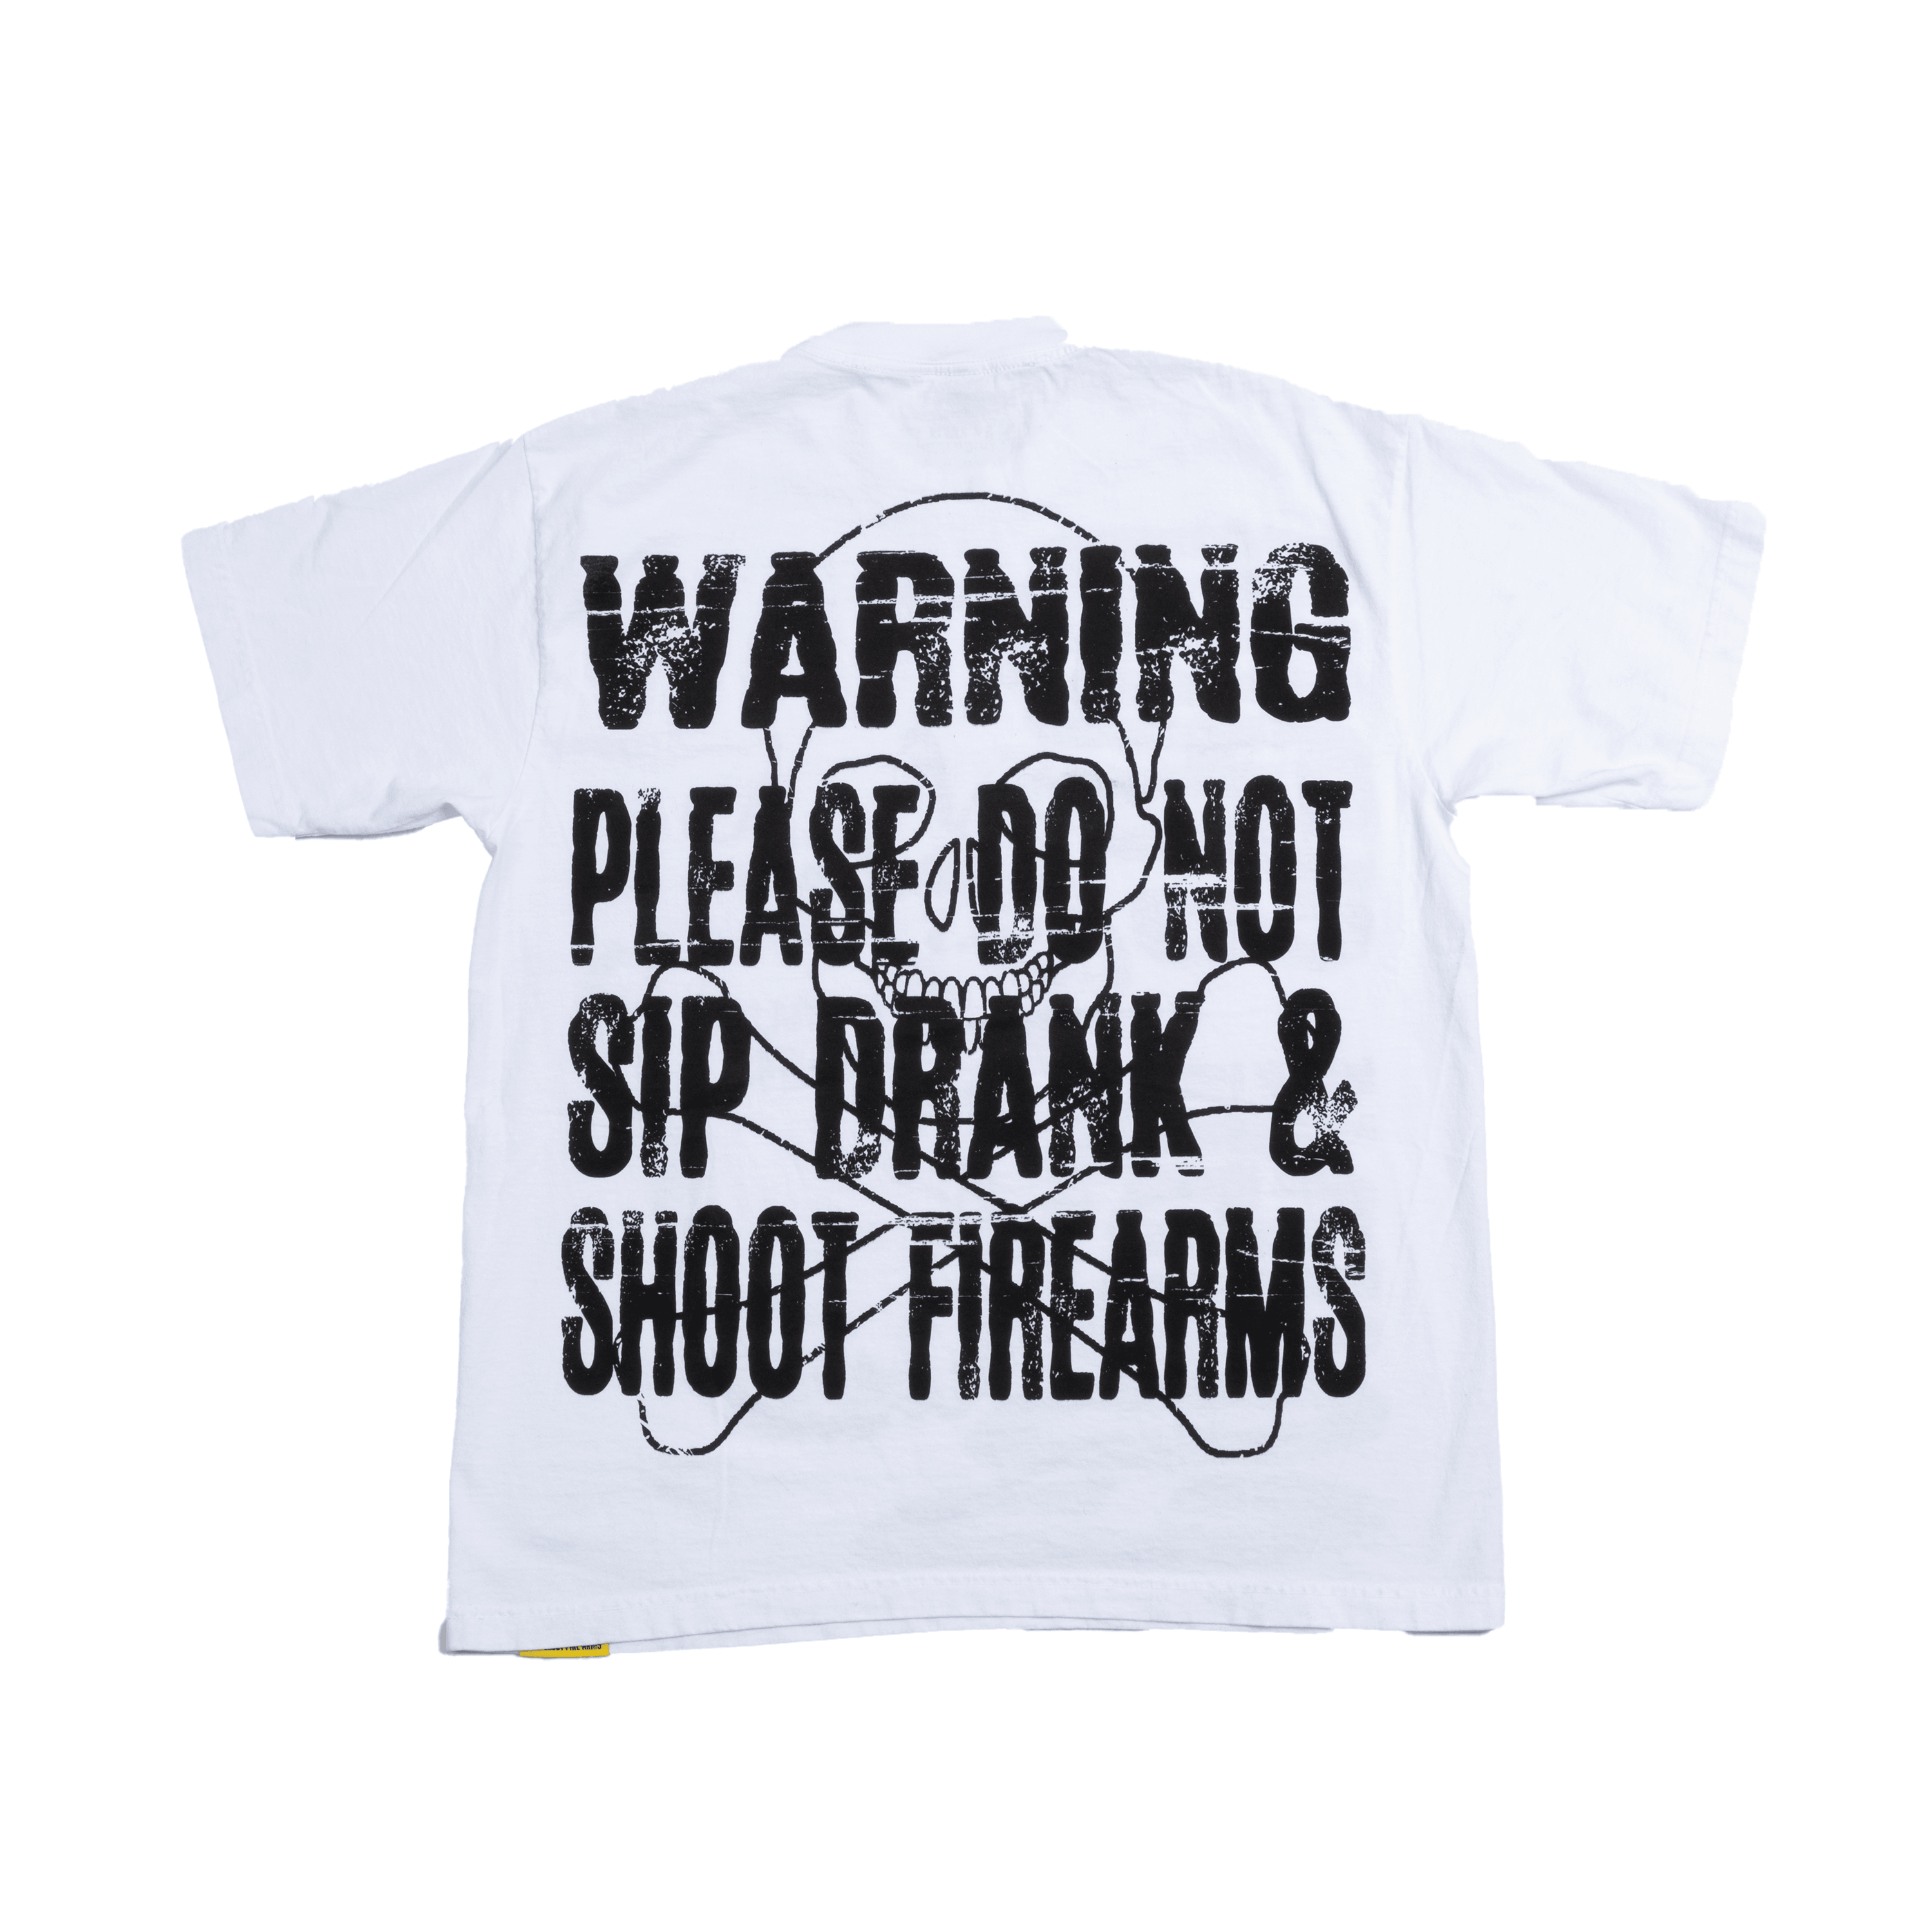 Warning T-Shirt